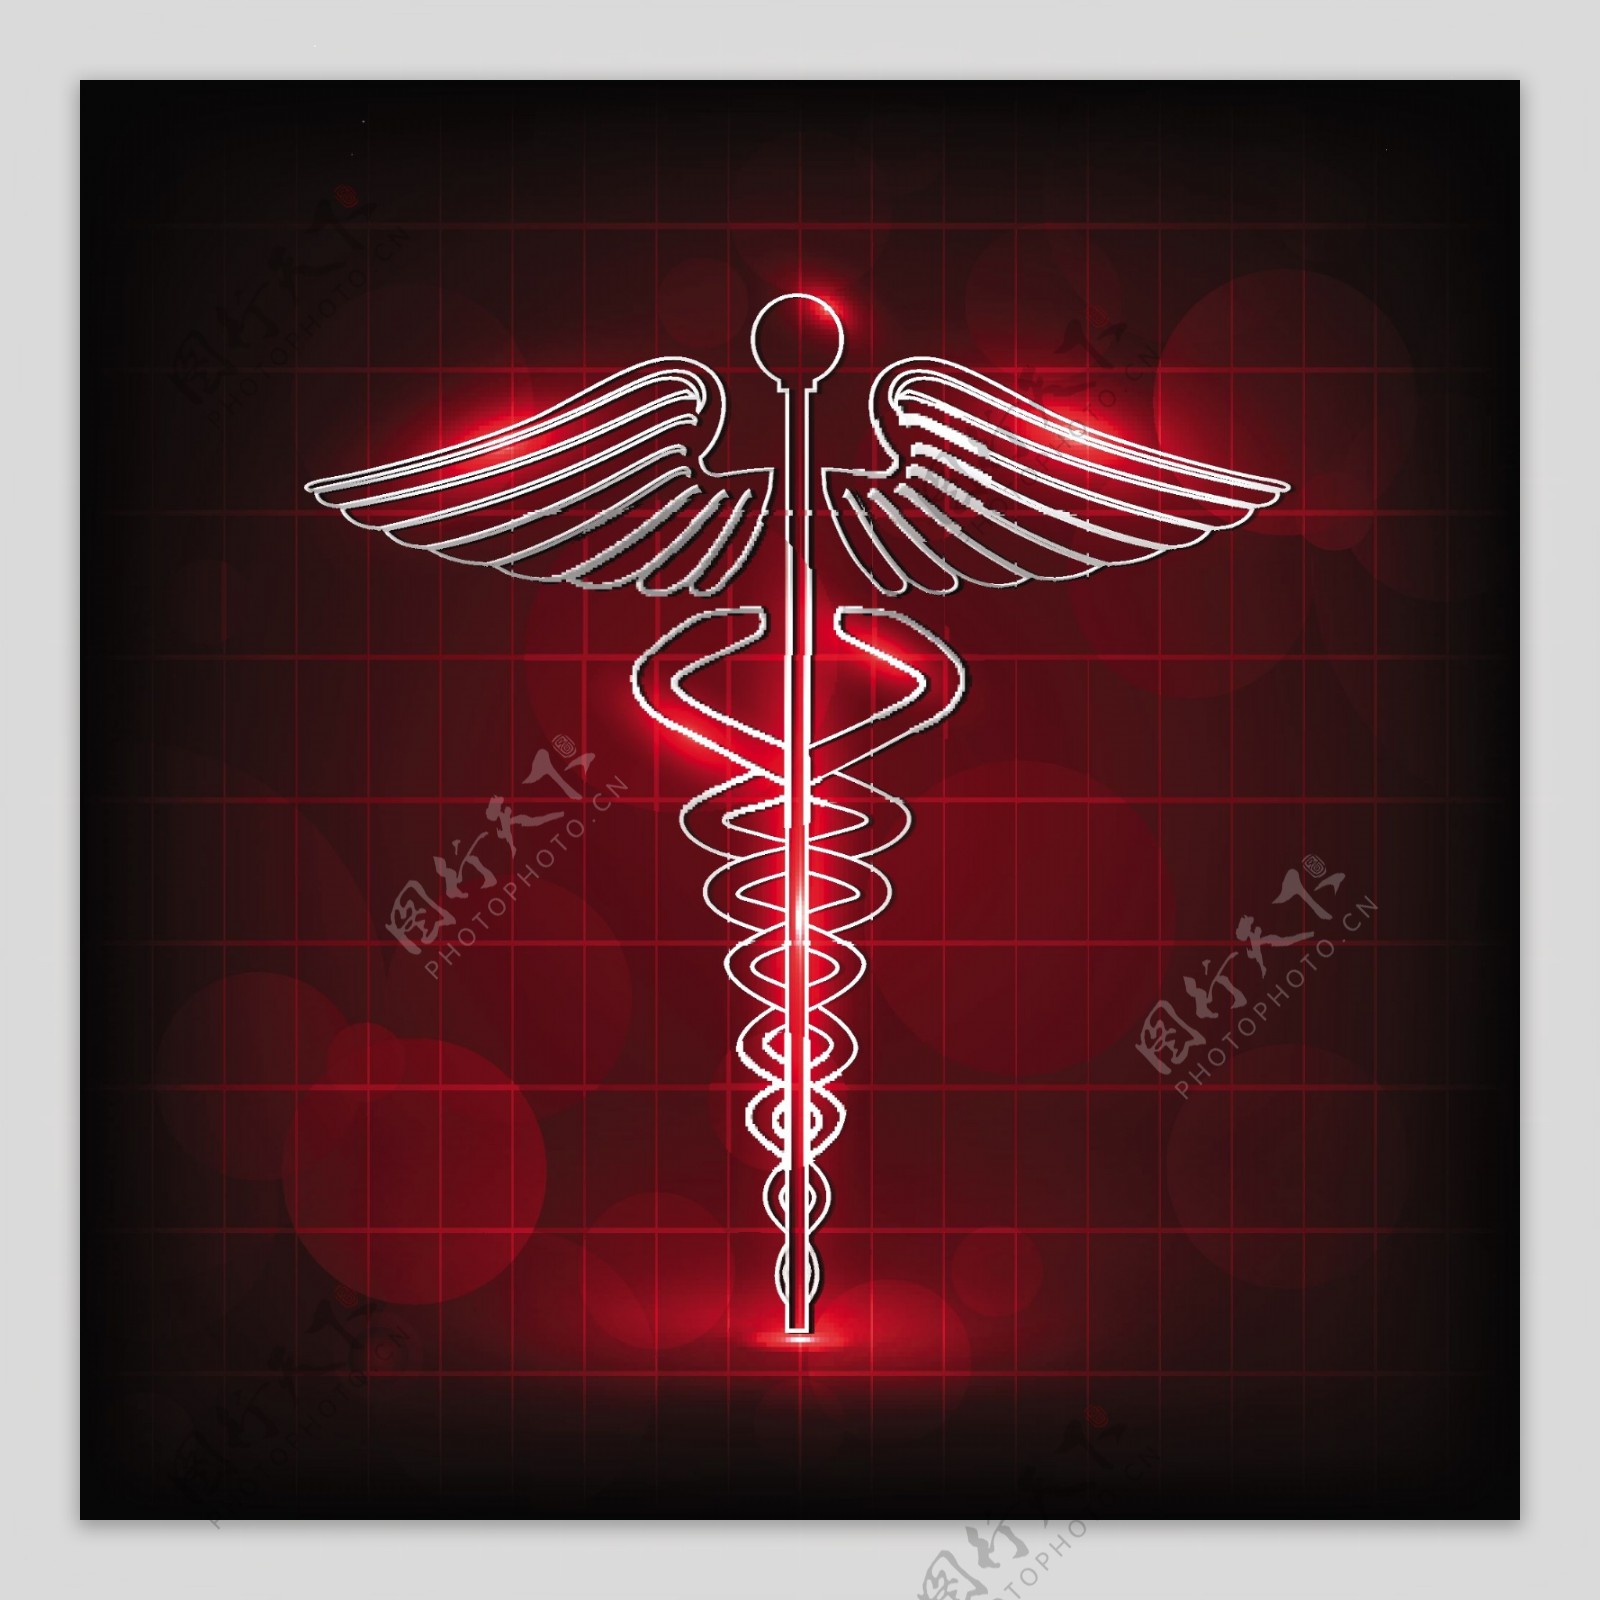 在闪亮的红色背景医疗符号抽象医学概念